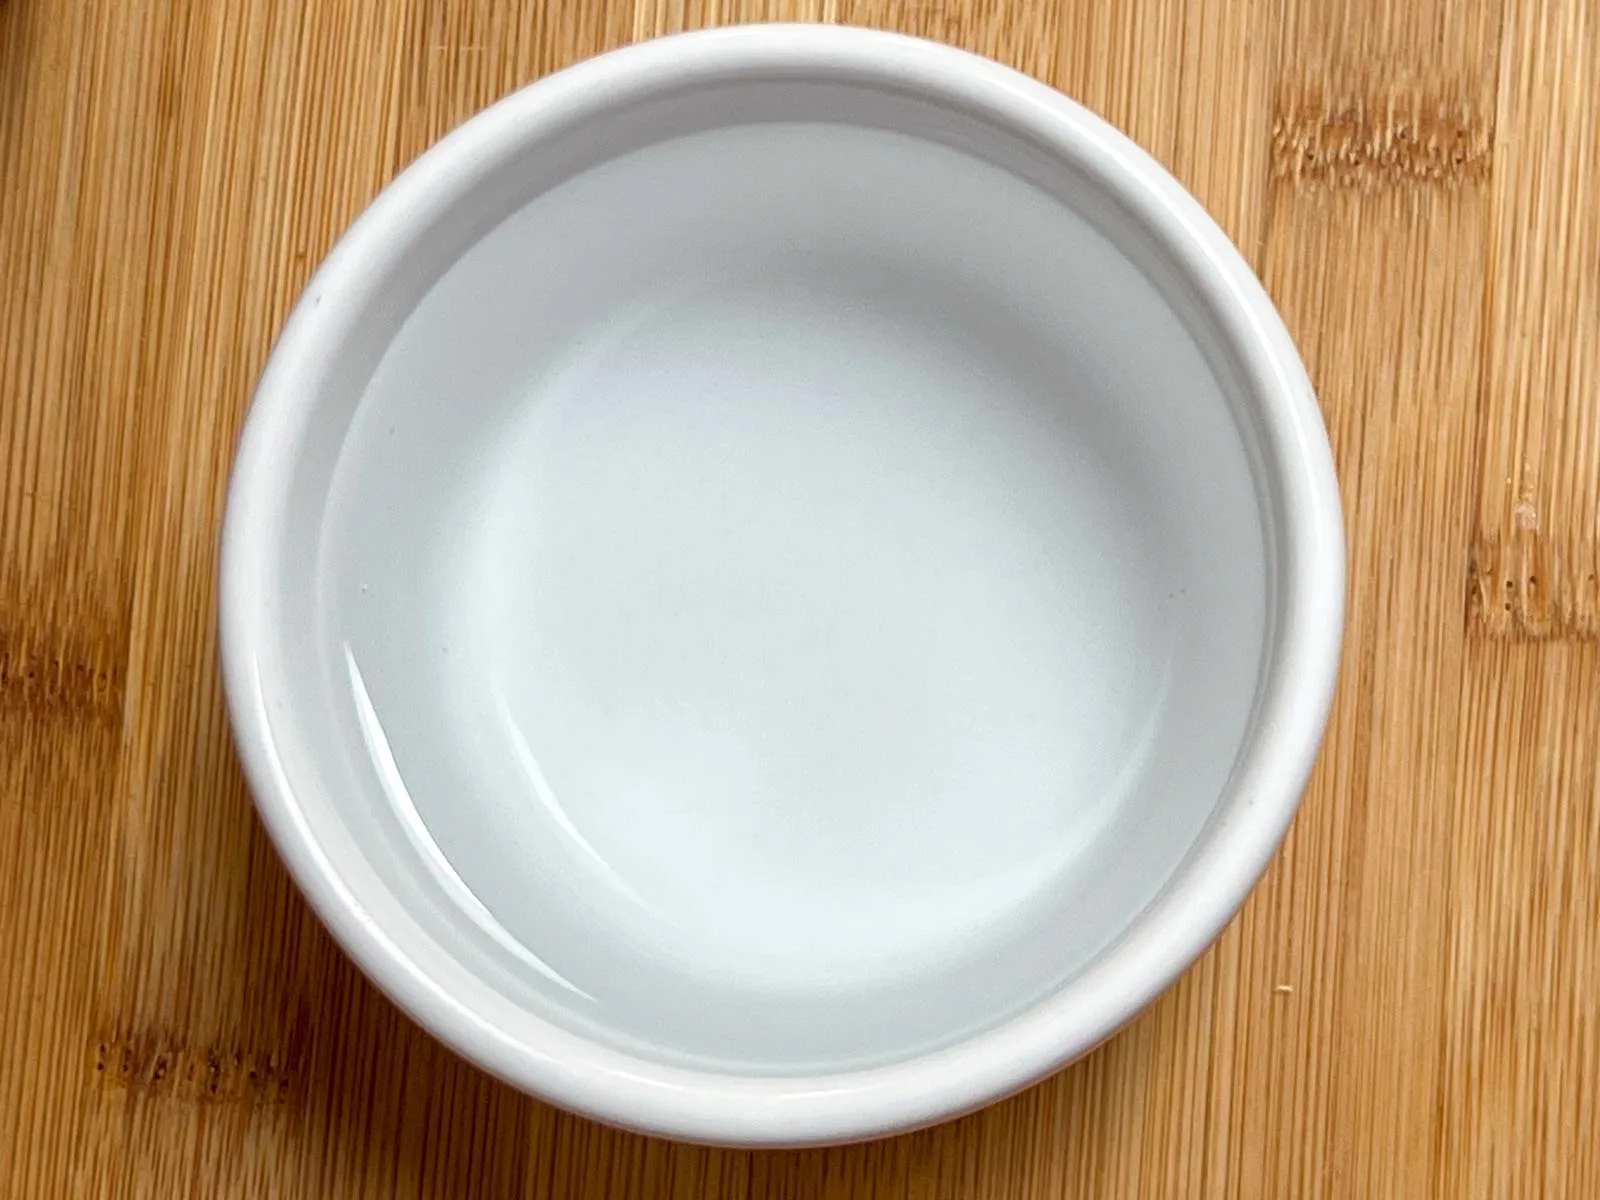 Water in a white ramekin